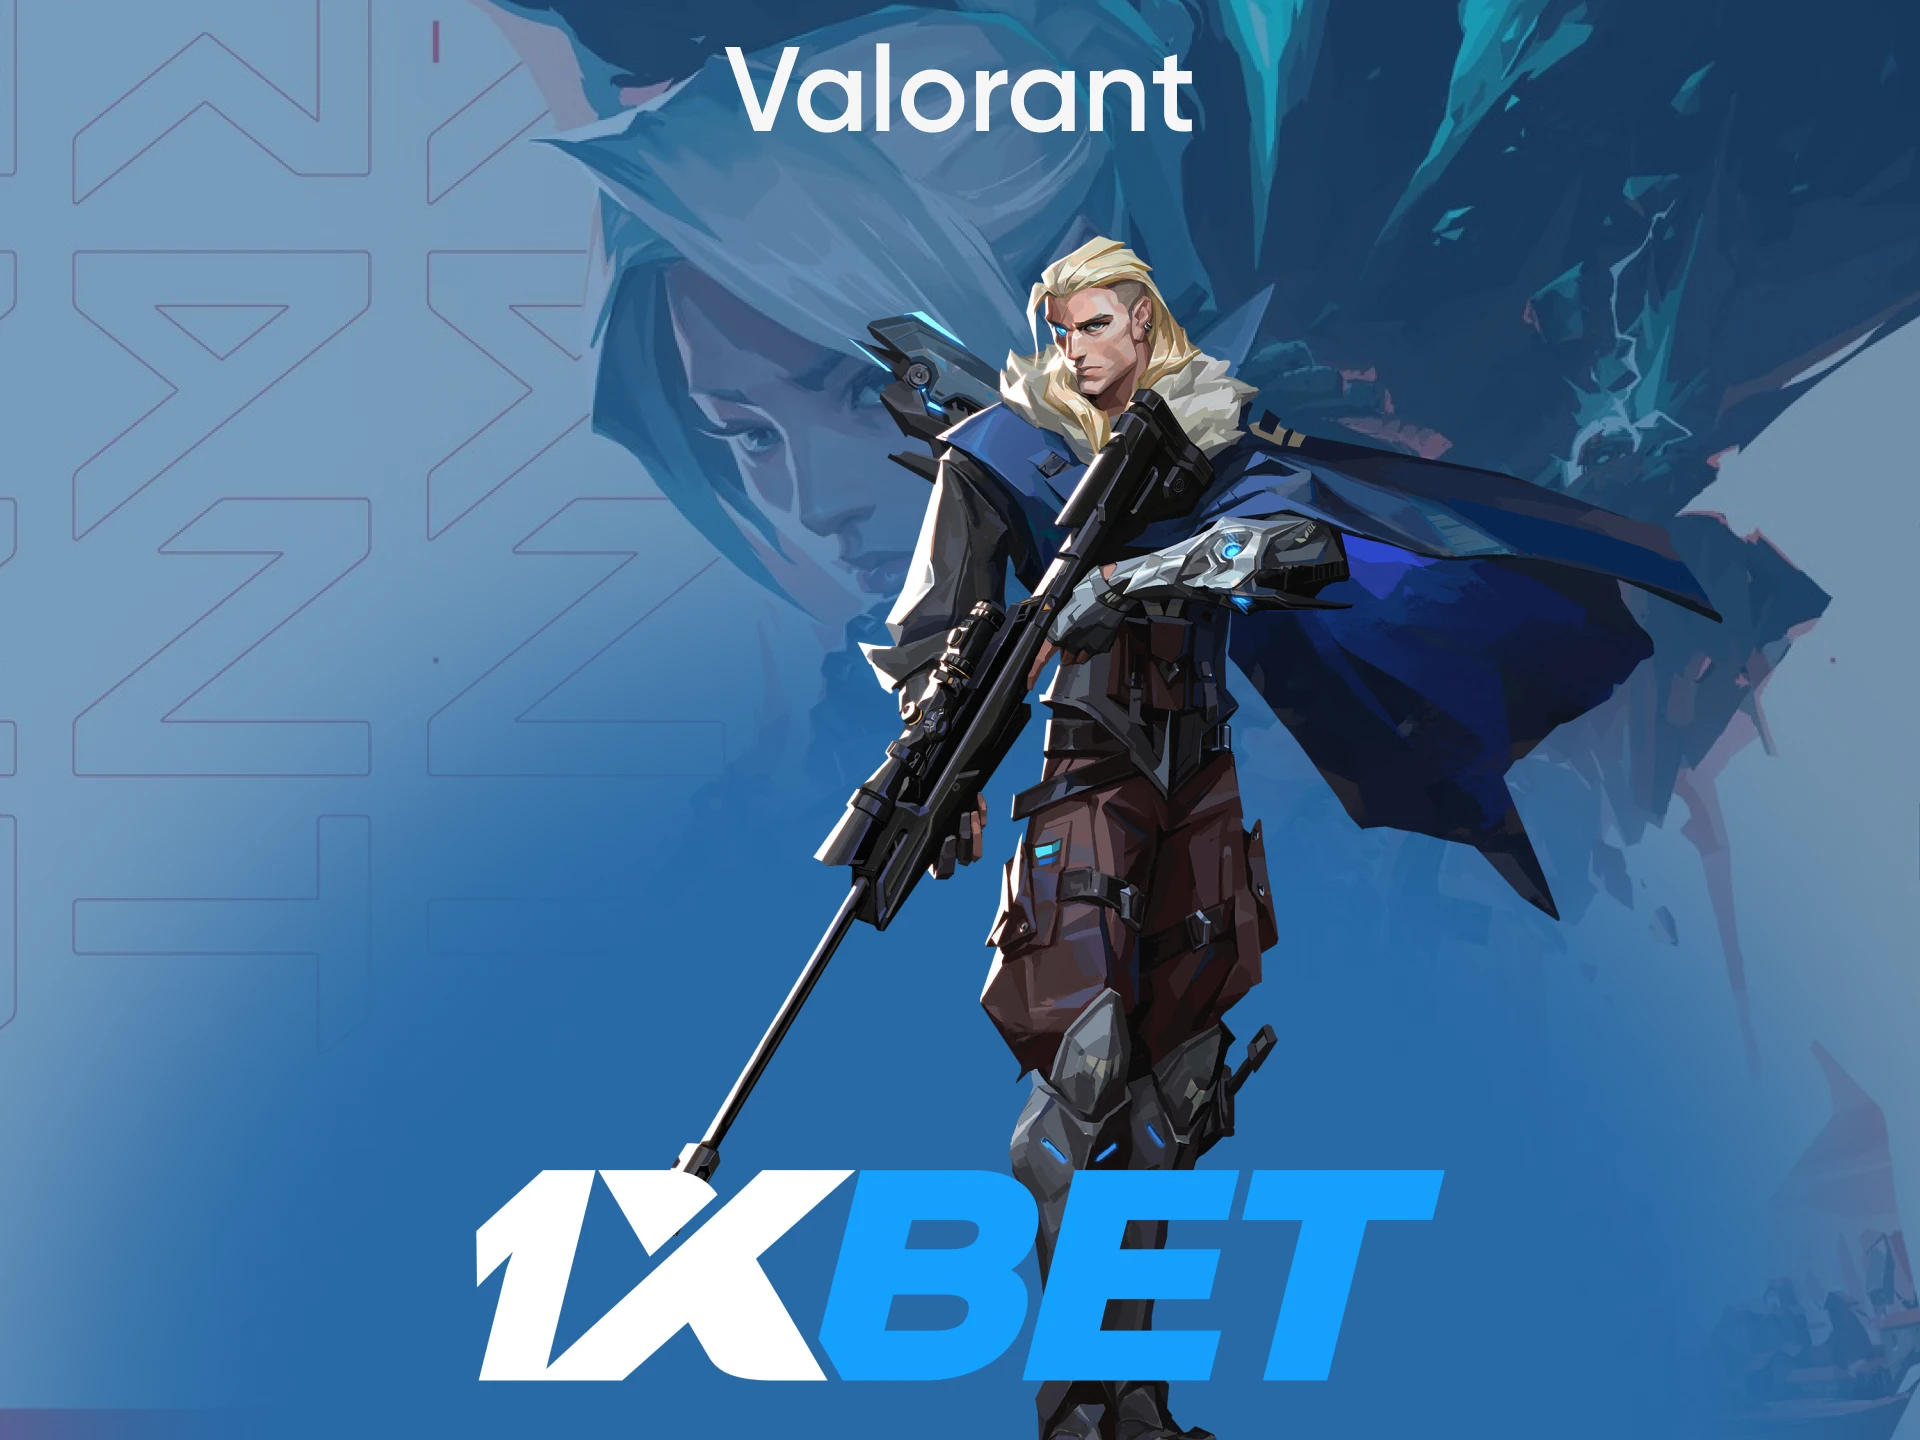 Para apostas em eSports da 1xbet, escolha Valorant.